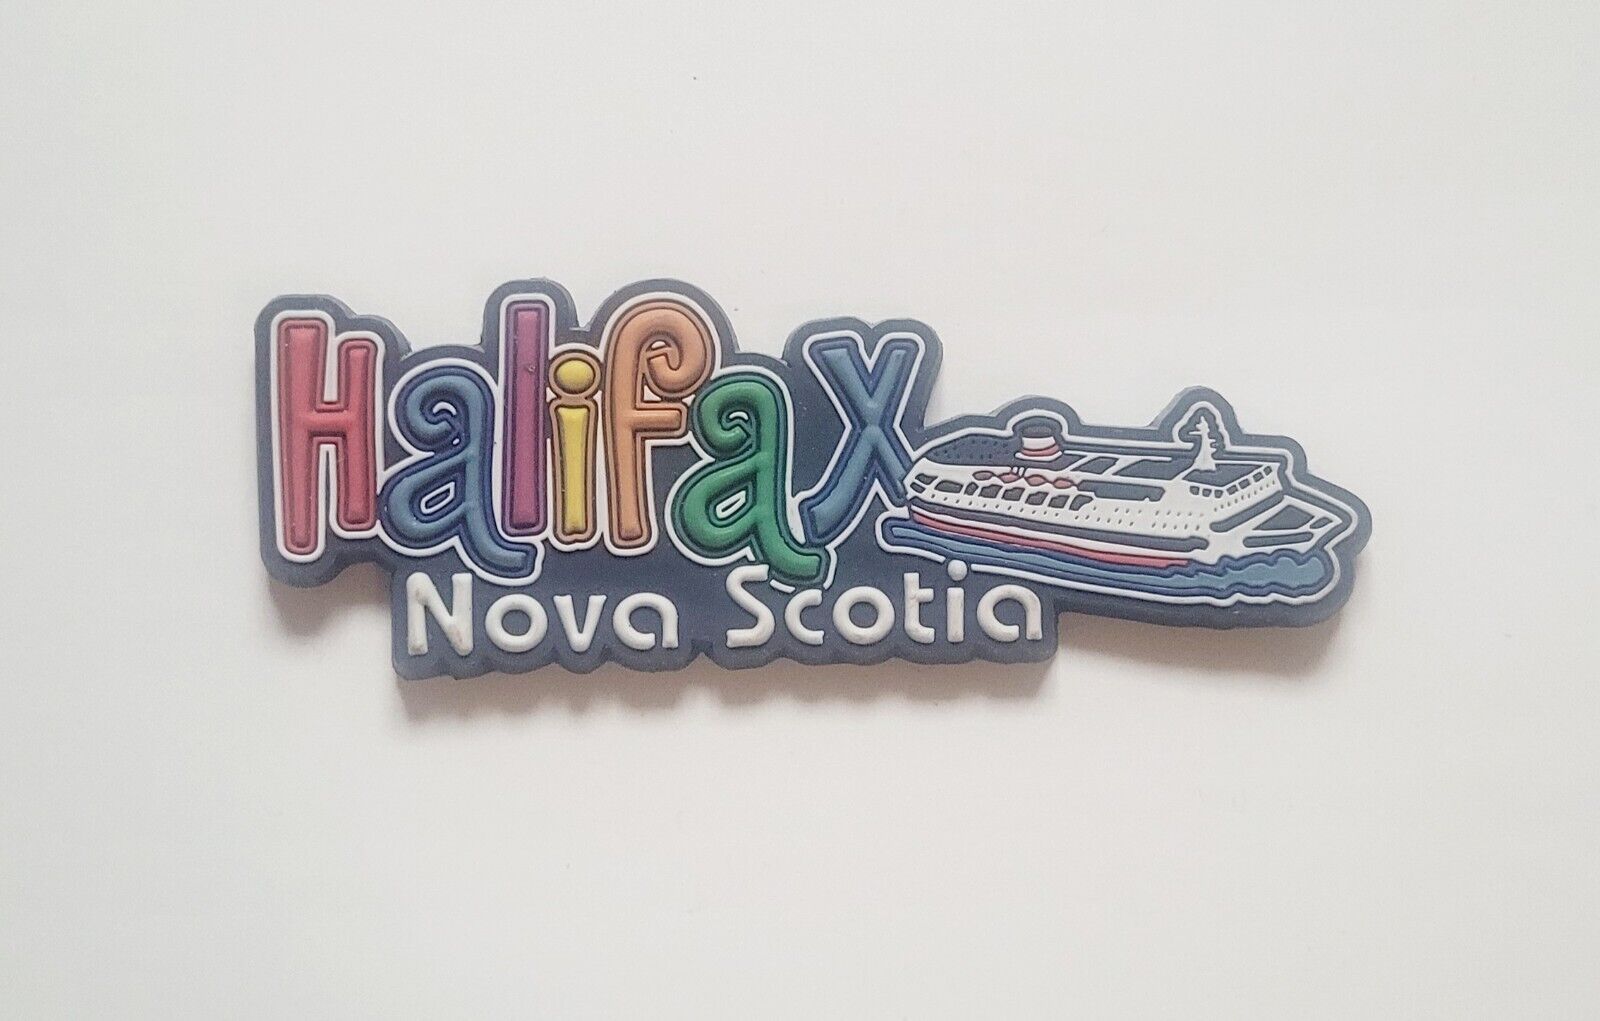 Halifax Nova Scotia Cruise Ship Refrigerator Magnet Souvenir 